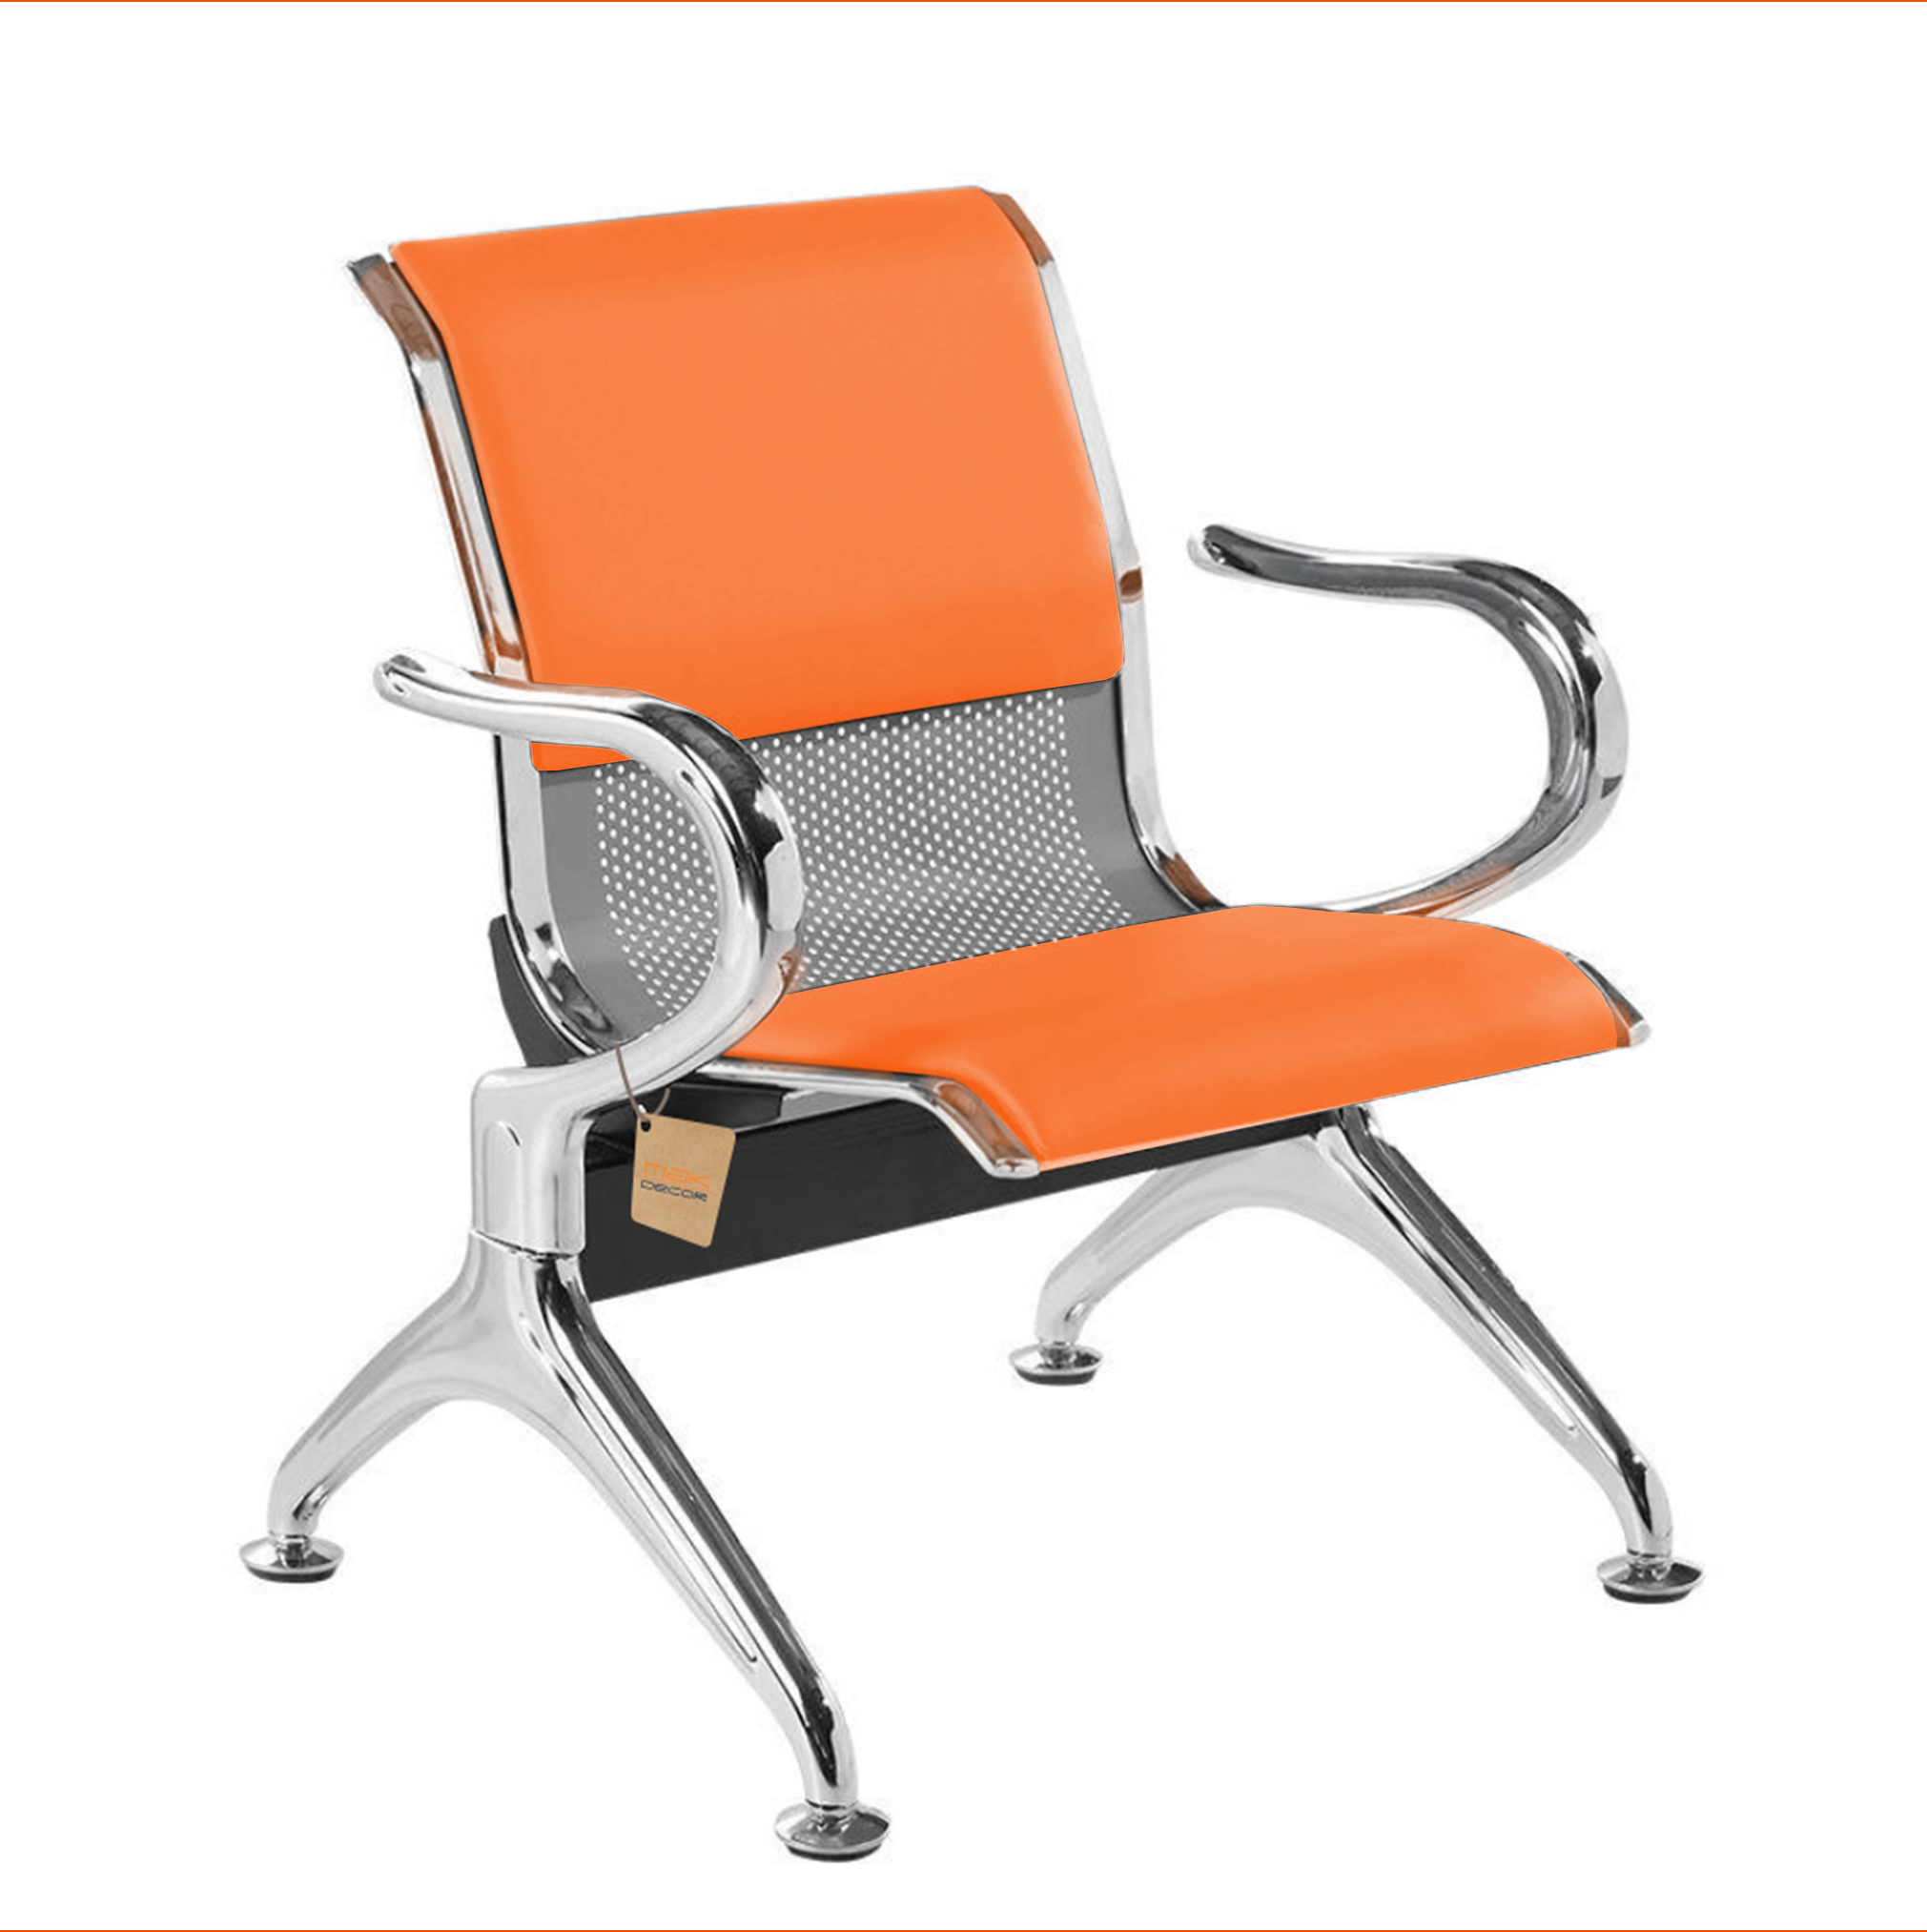 Cadeira Longarina 1 Lugar Com Estofado Colors: Laranja